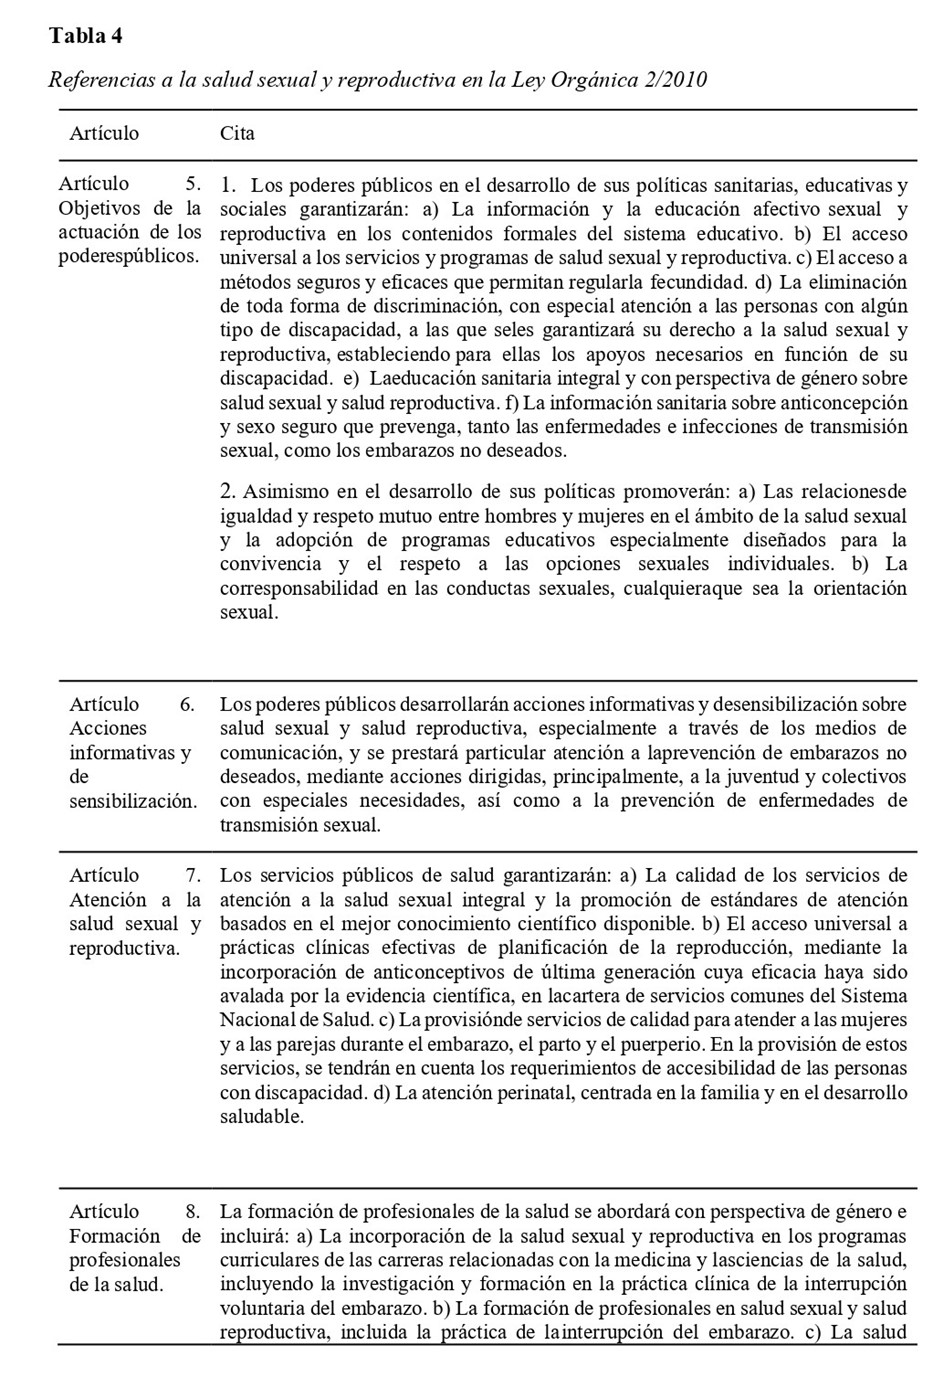 Referencias a la salud sexual y reproductiva en la Ley Orgánica 2/2010